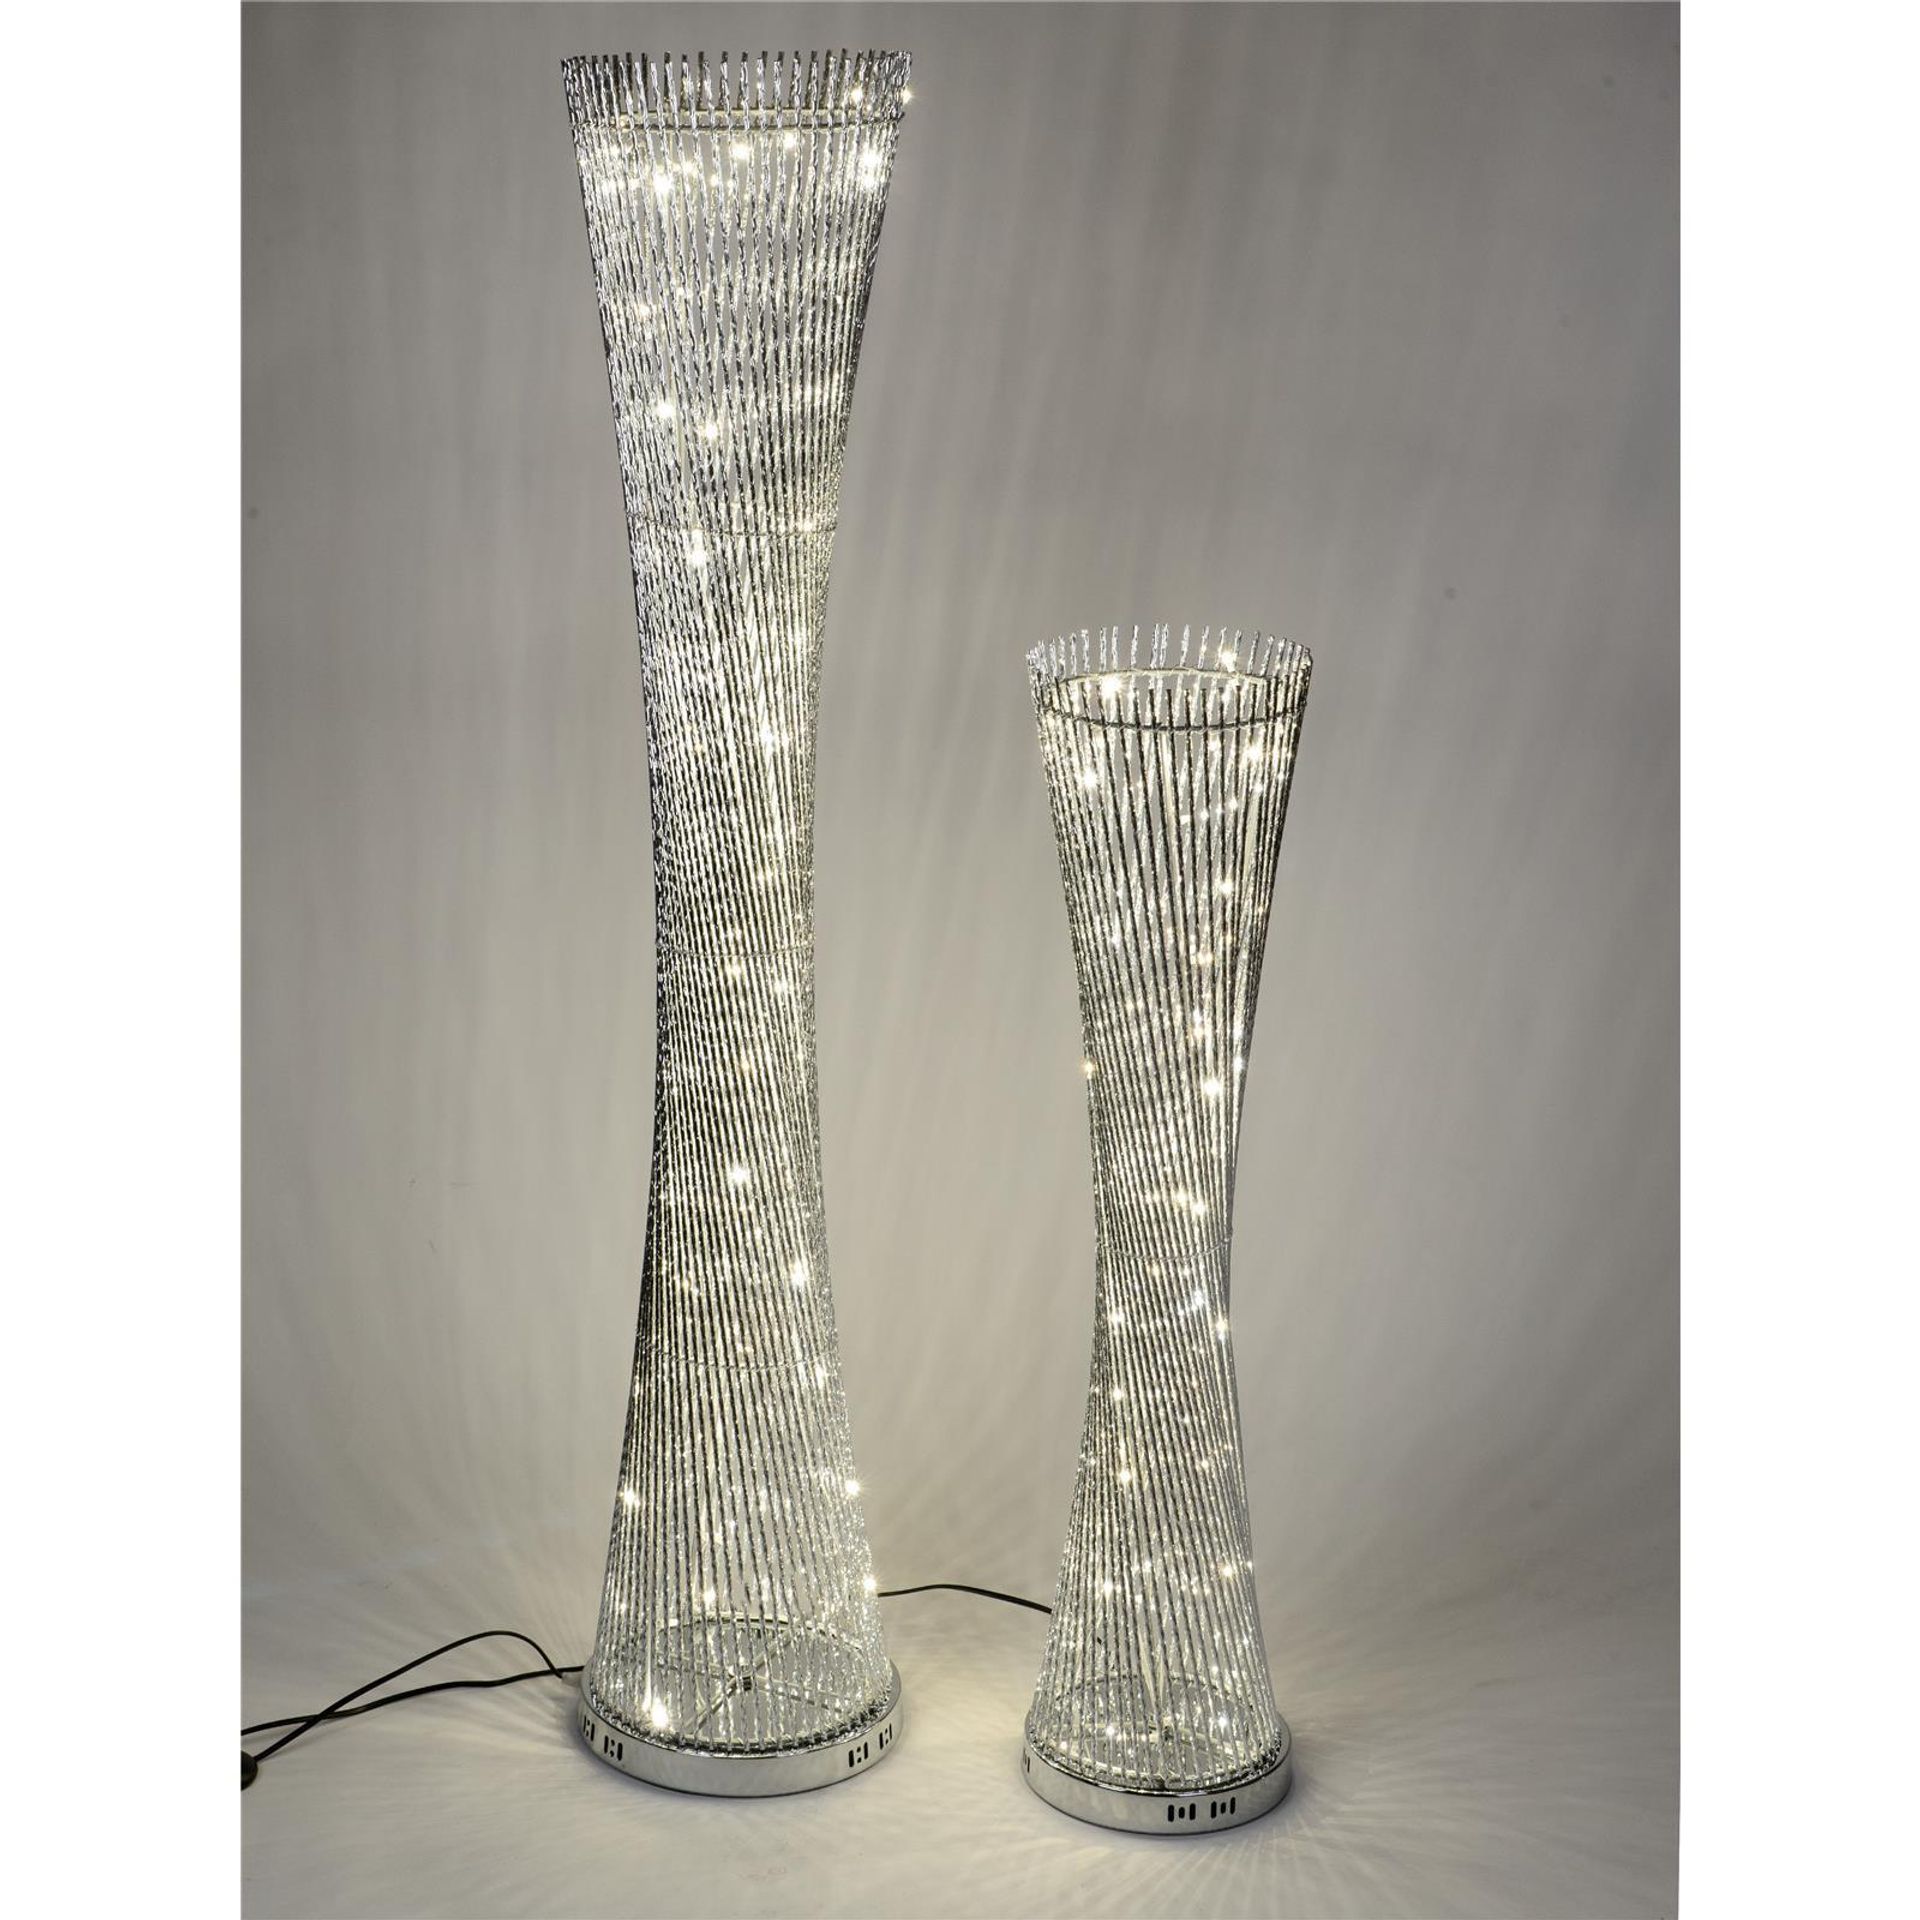 Zeitlose Eleganz: Runde gedrehte Lampe, 145 cm x 30 cm aus glänzendem Aluminium mit warm-weißem LED-Licht